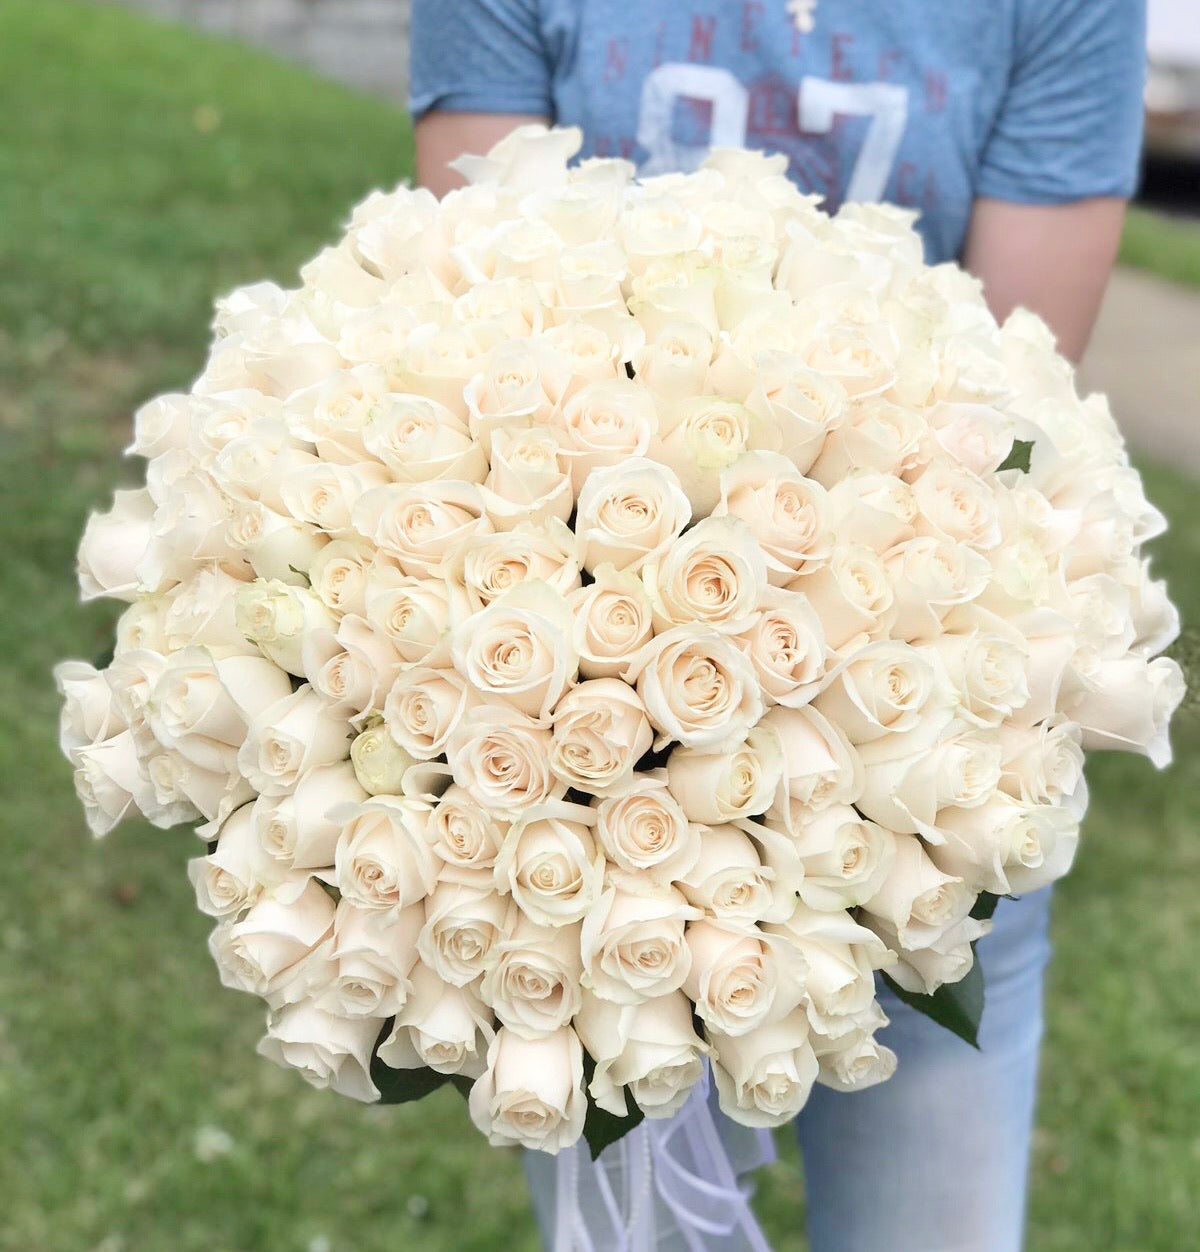 130 white roses